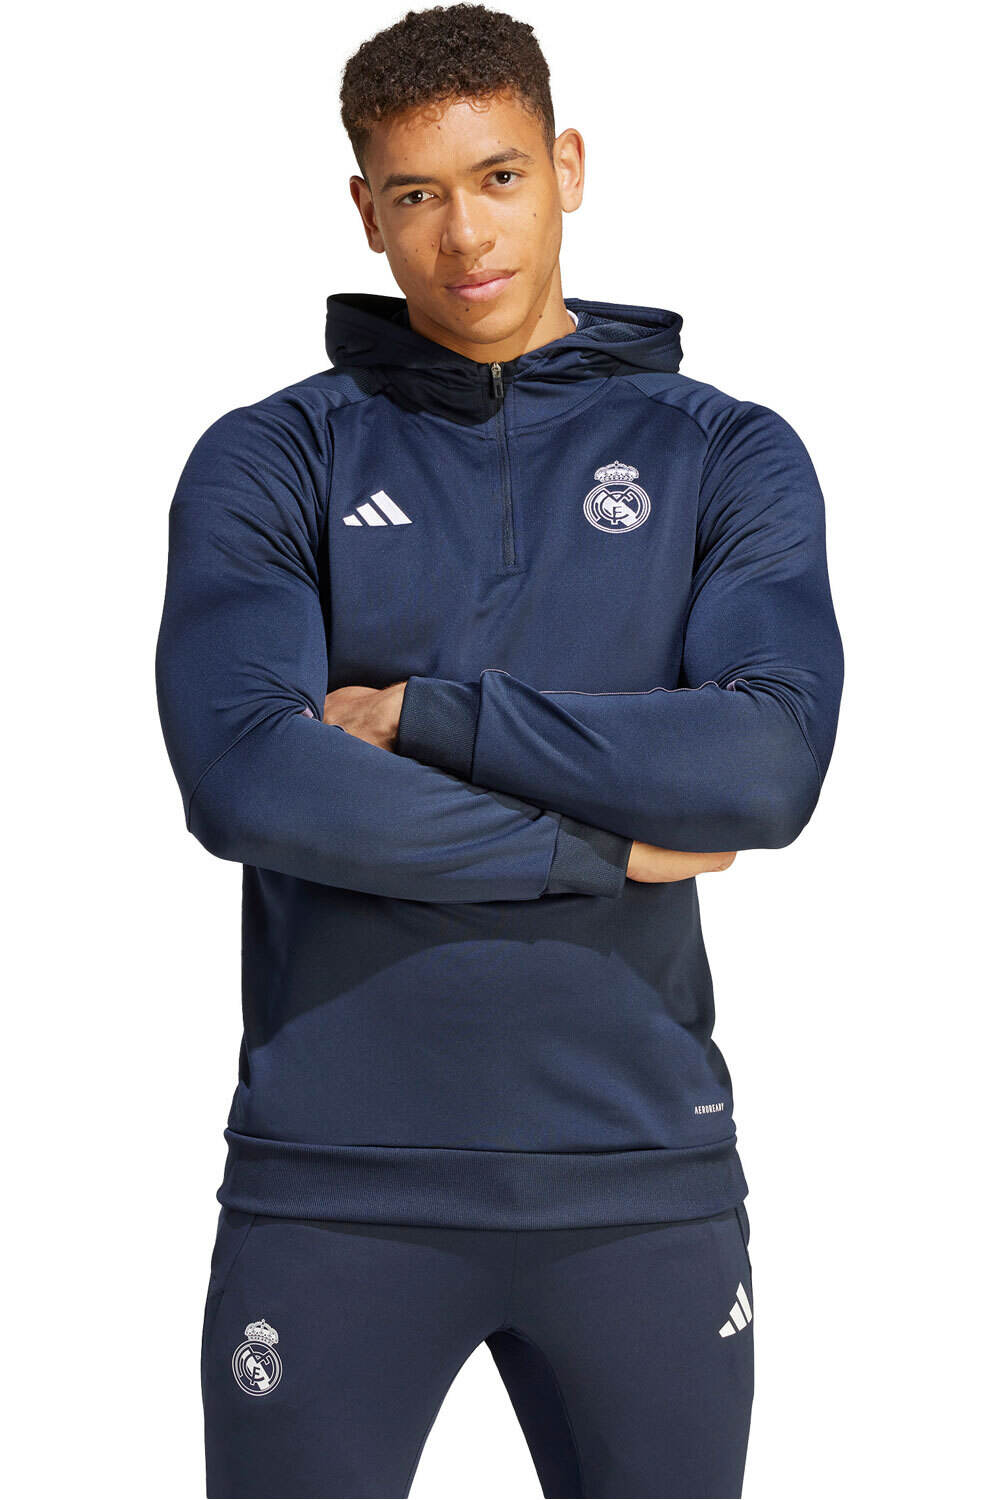 Chaqueta adidas Real Madrid mujer entrenamiento